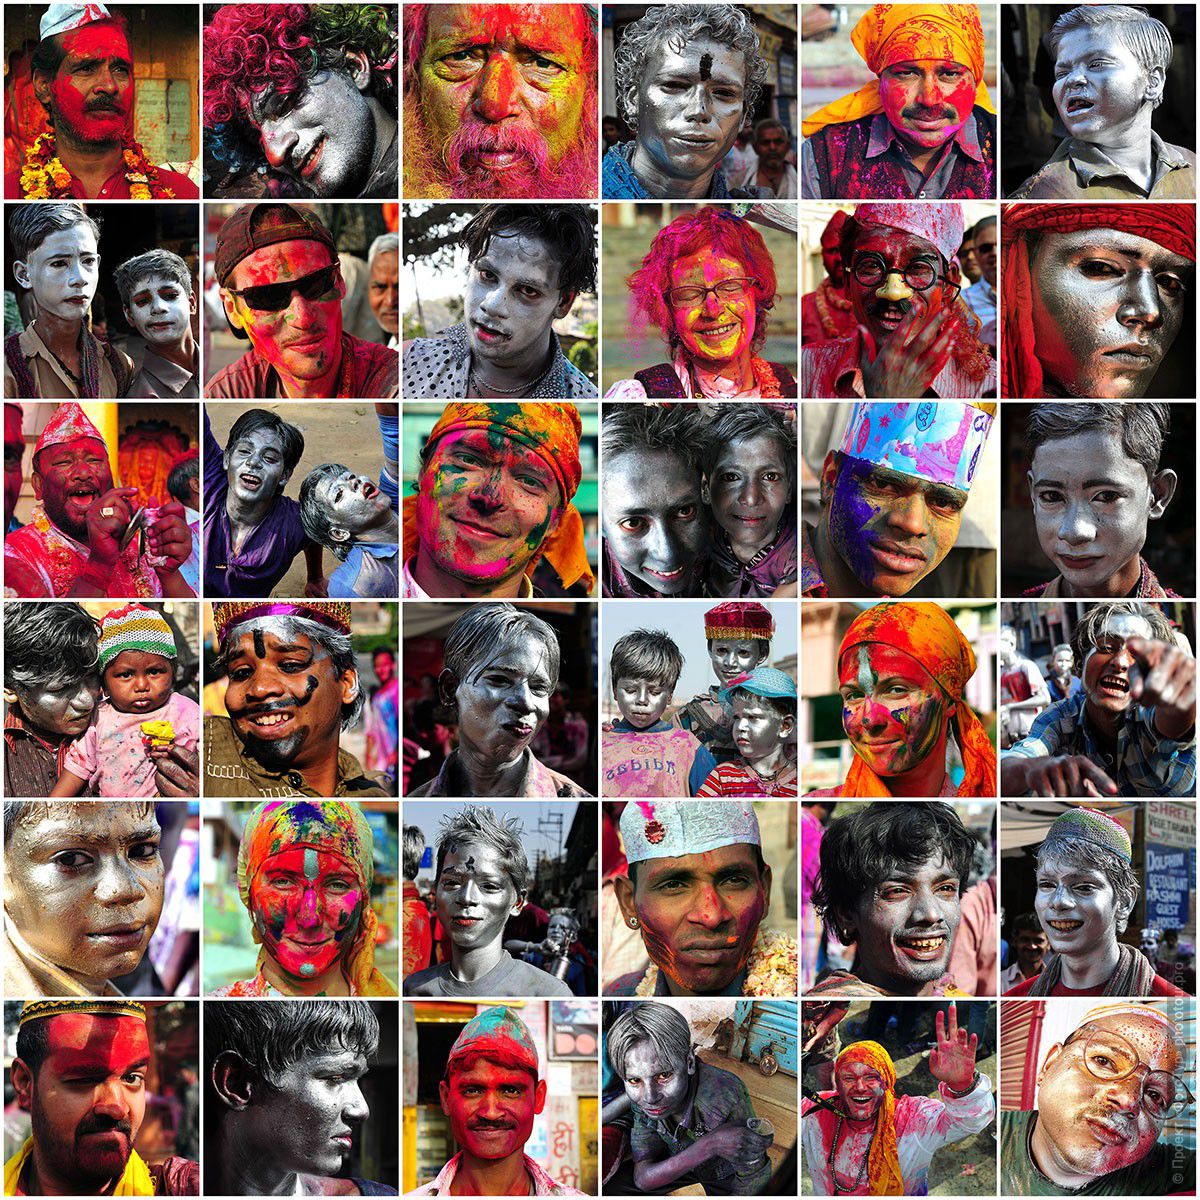 Фотоколлаж из фотографий, отснятых во время Праздника Холи в Варанаси, фототур в Варанаси, март 2012 года.